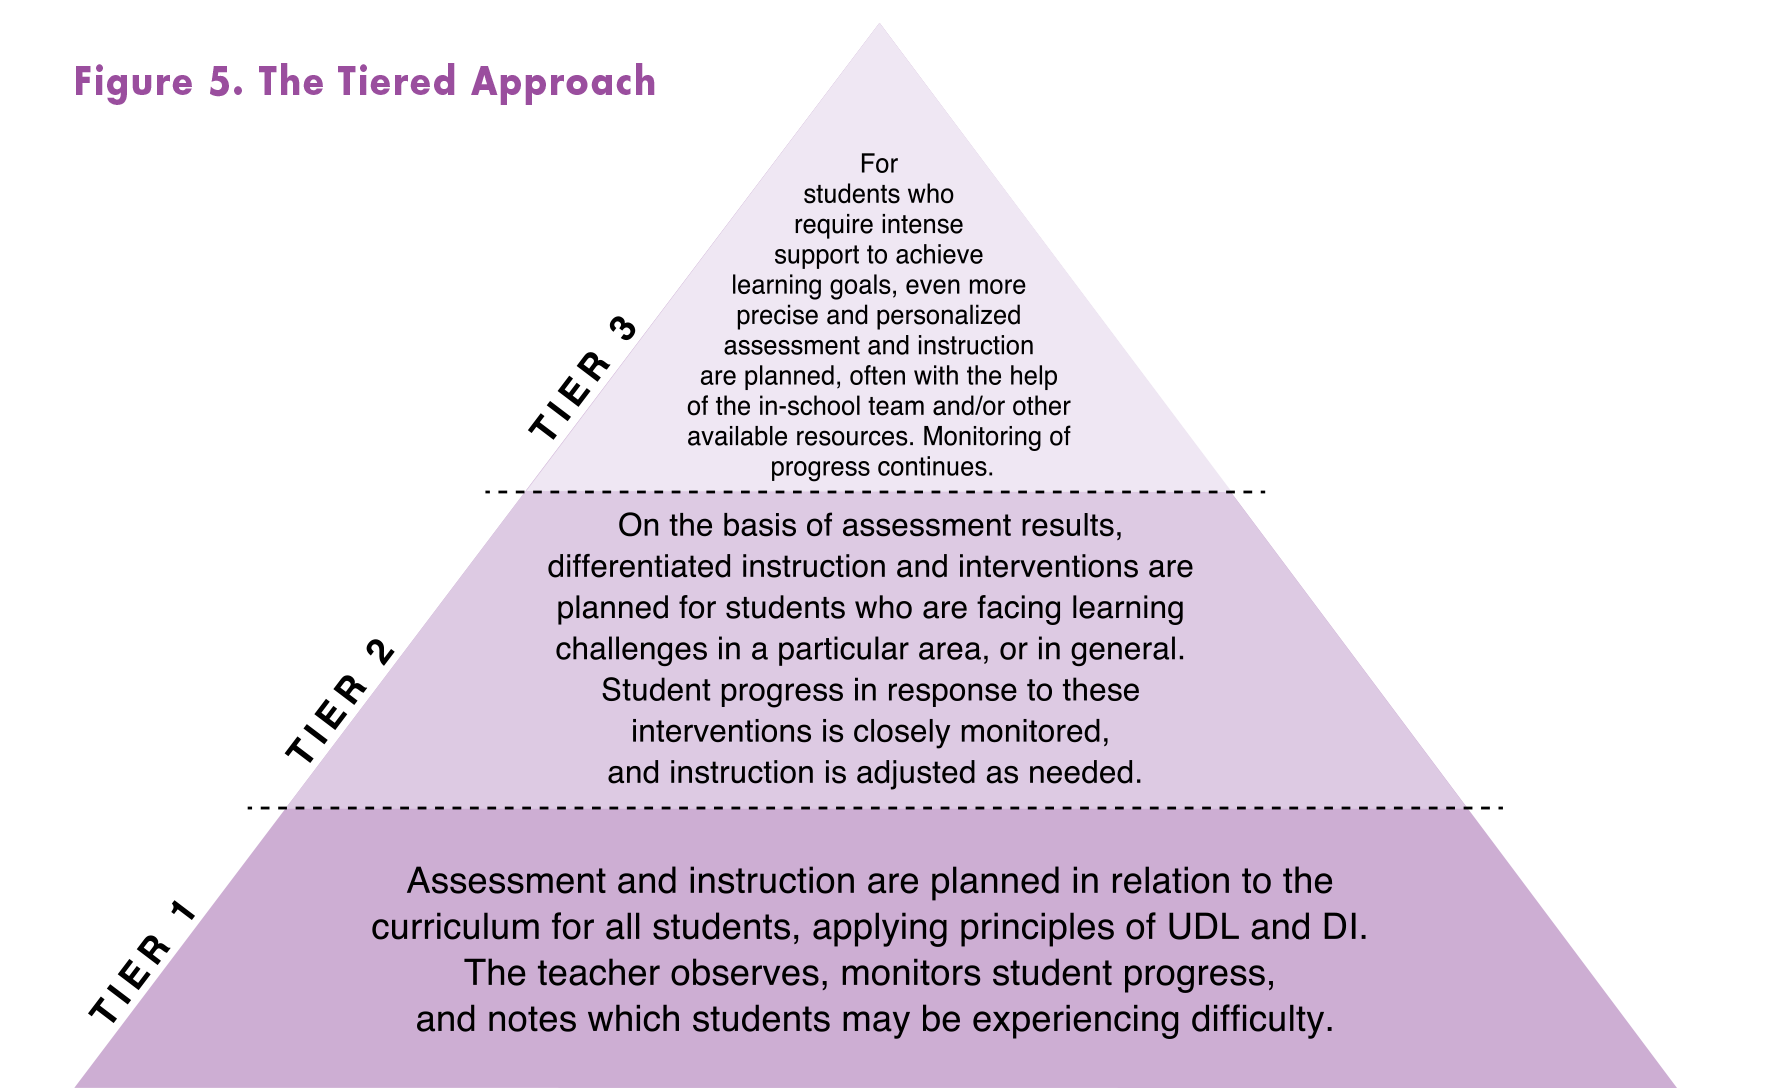 Pyramide : L’approche à paliers (ministère de l’Éducation) Palier 1 (bas de la pyramide) : L’évaluation et l’enseignement sont planifiés relativement au programme-cadre pour l’ensemble des élèves, en utilisant les principes de CUA et de DP. L’enseignant(e) observe et surveille la progression des élèves et note ceux qui pourraient avoir de la difficulté. Palier 2 (milieu de la pyramide) : En fonction des résultats de l’évaluation, de la différenciation pédagogique et des interventions sont planifiées pour les élèves qui rencontrent des difficultés d’apprentissage en général ou dans un domaine particulier. La progression des élèves en réaction à ces interventions est surveillée de près et l’enseignement est ajusté au besoin. Palier 3 (haut de la pyramide) : Pour les élèves qui nécessitent un soutien intensif pour atteindre les objectifs d’apprentissage, une évaluation et un enseignement encore plus précis et personnalisés sont planifiés, souvent avec l’aide de l’équipe scolaire ou d’autres ressources accessibles. La surveillance de la progression se poursuit.